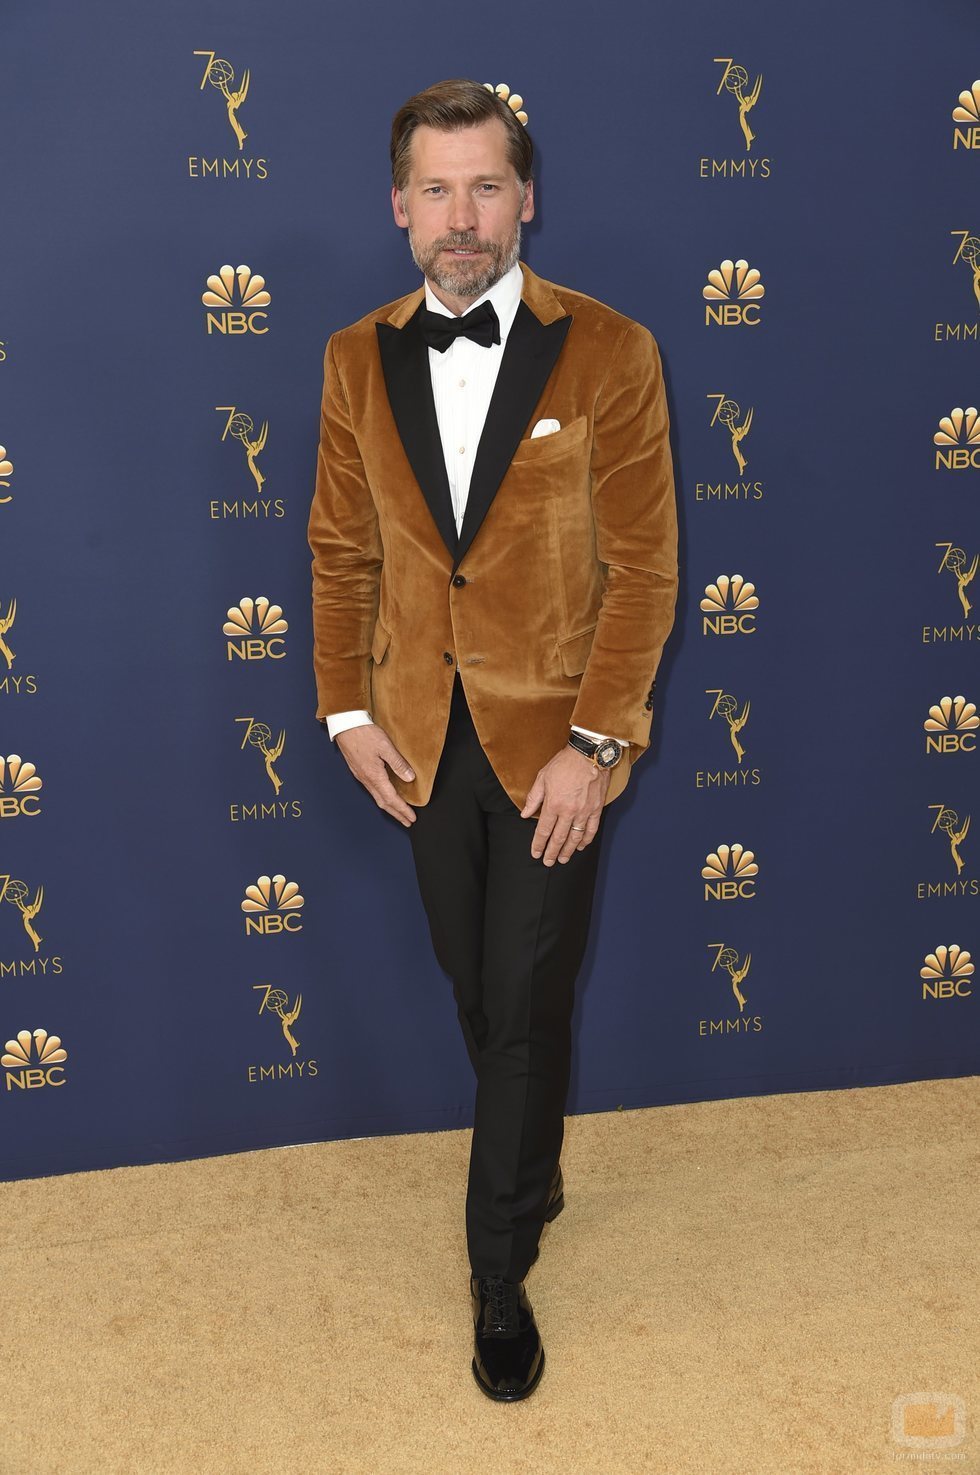 Nikolaj Coster-Waldau en la alfombra roja de los Emmy 2018